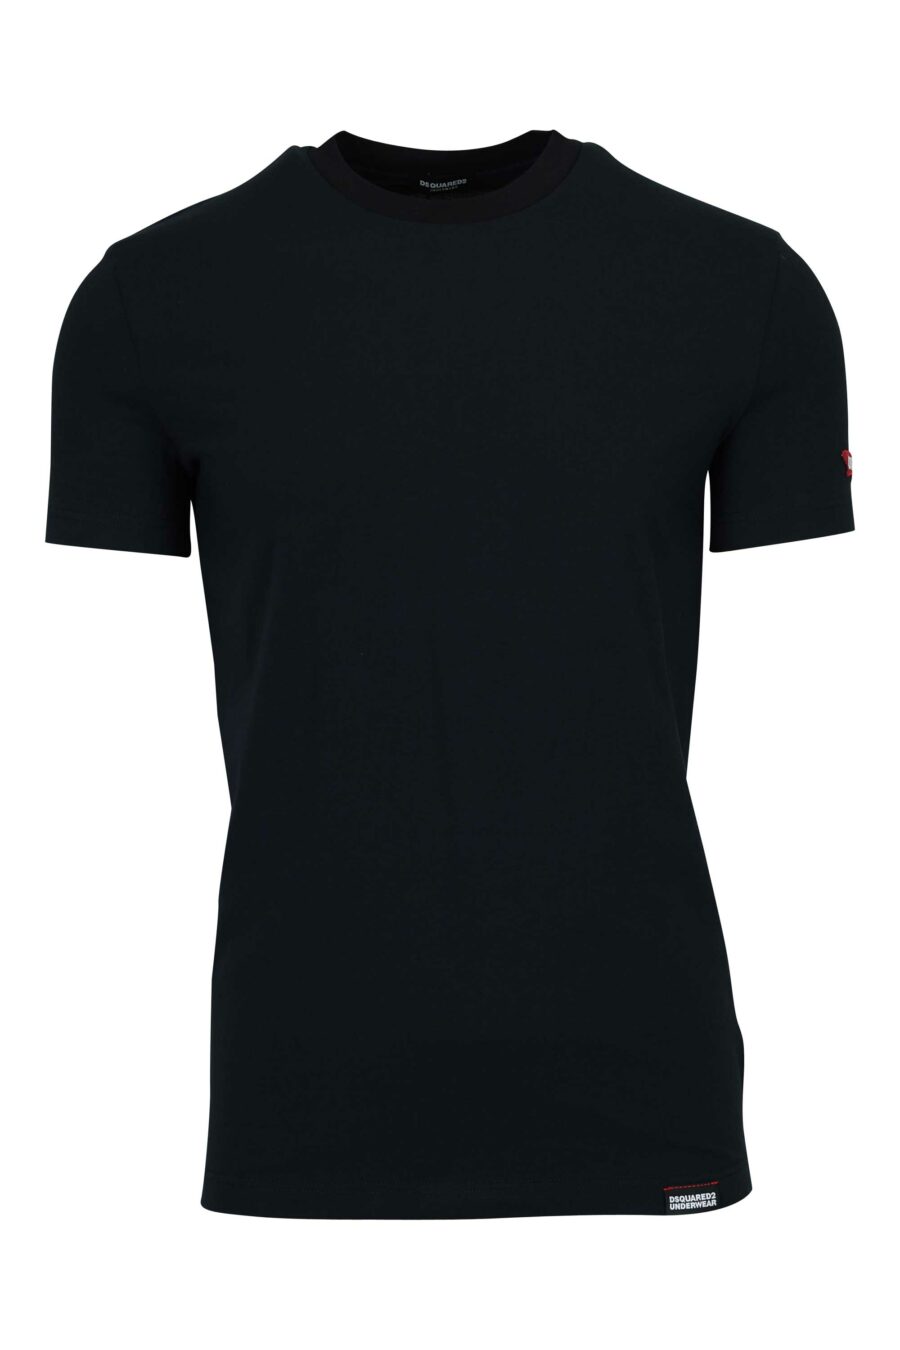 Camiseta negra con logo etiqueta - 8032674811202